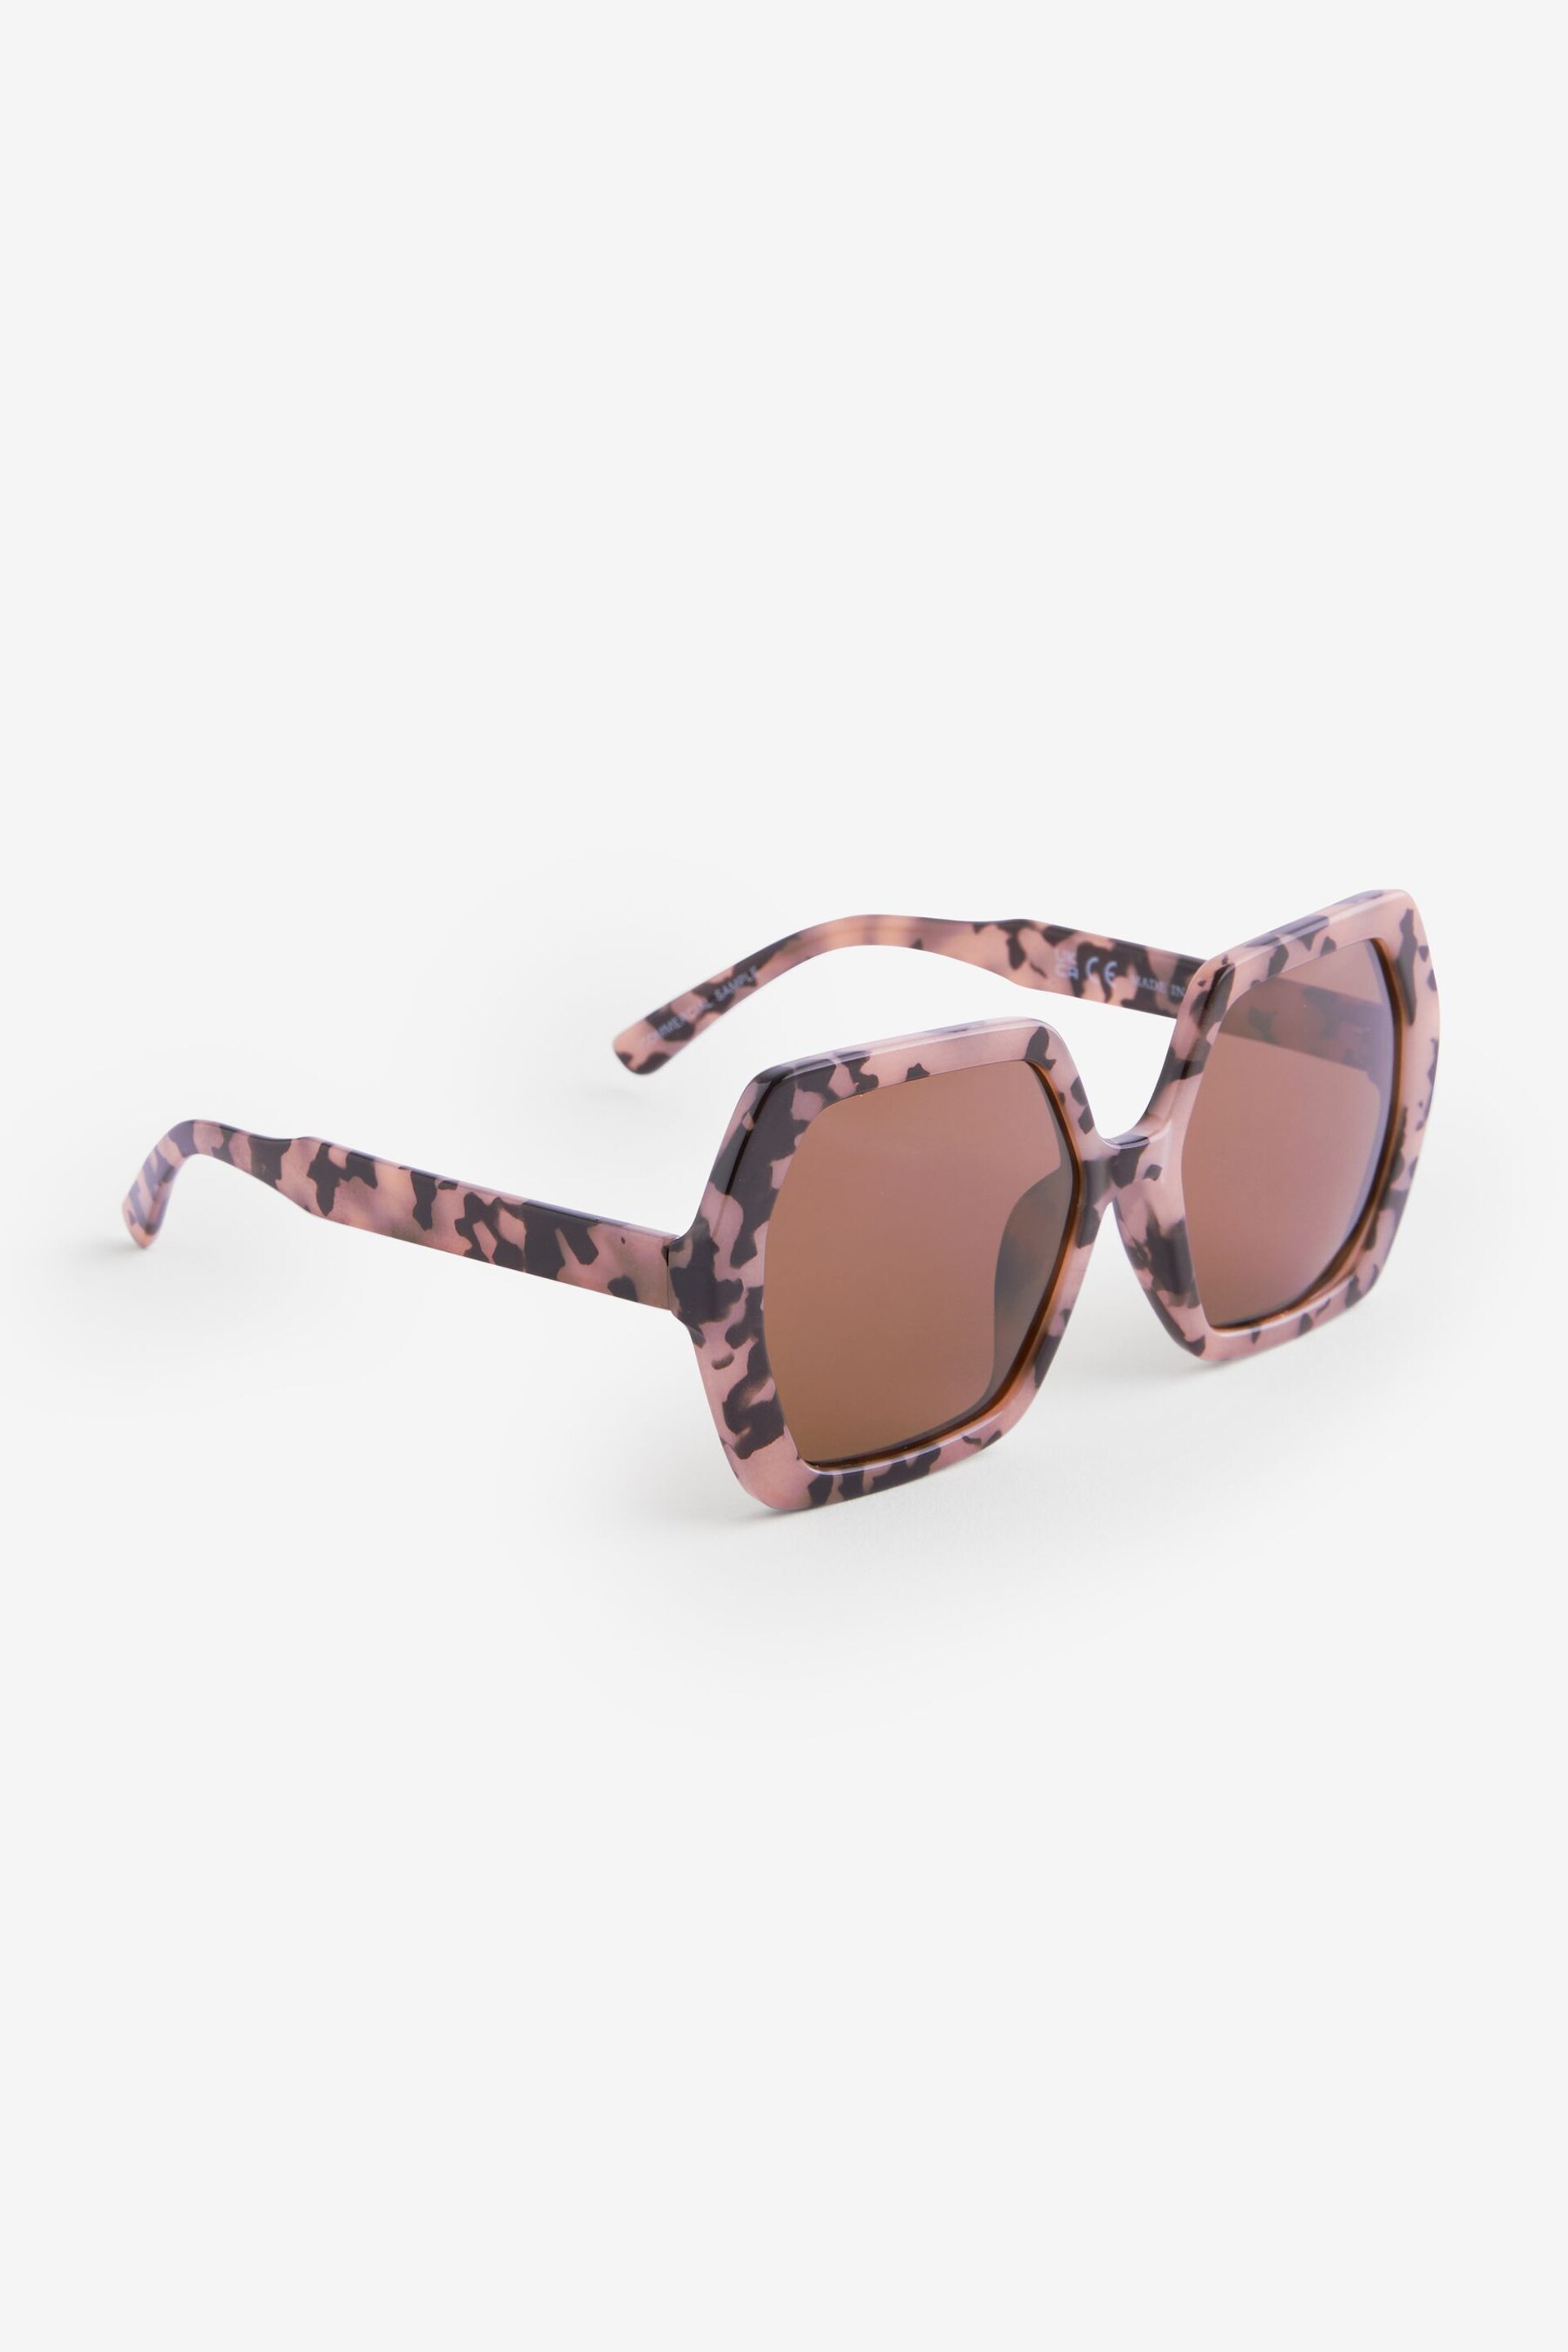 Tortoiseshell Brown Soft Hexagon Sunglasses - Image 3 of 5